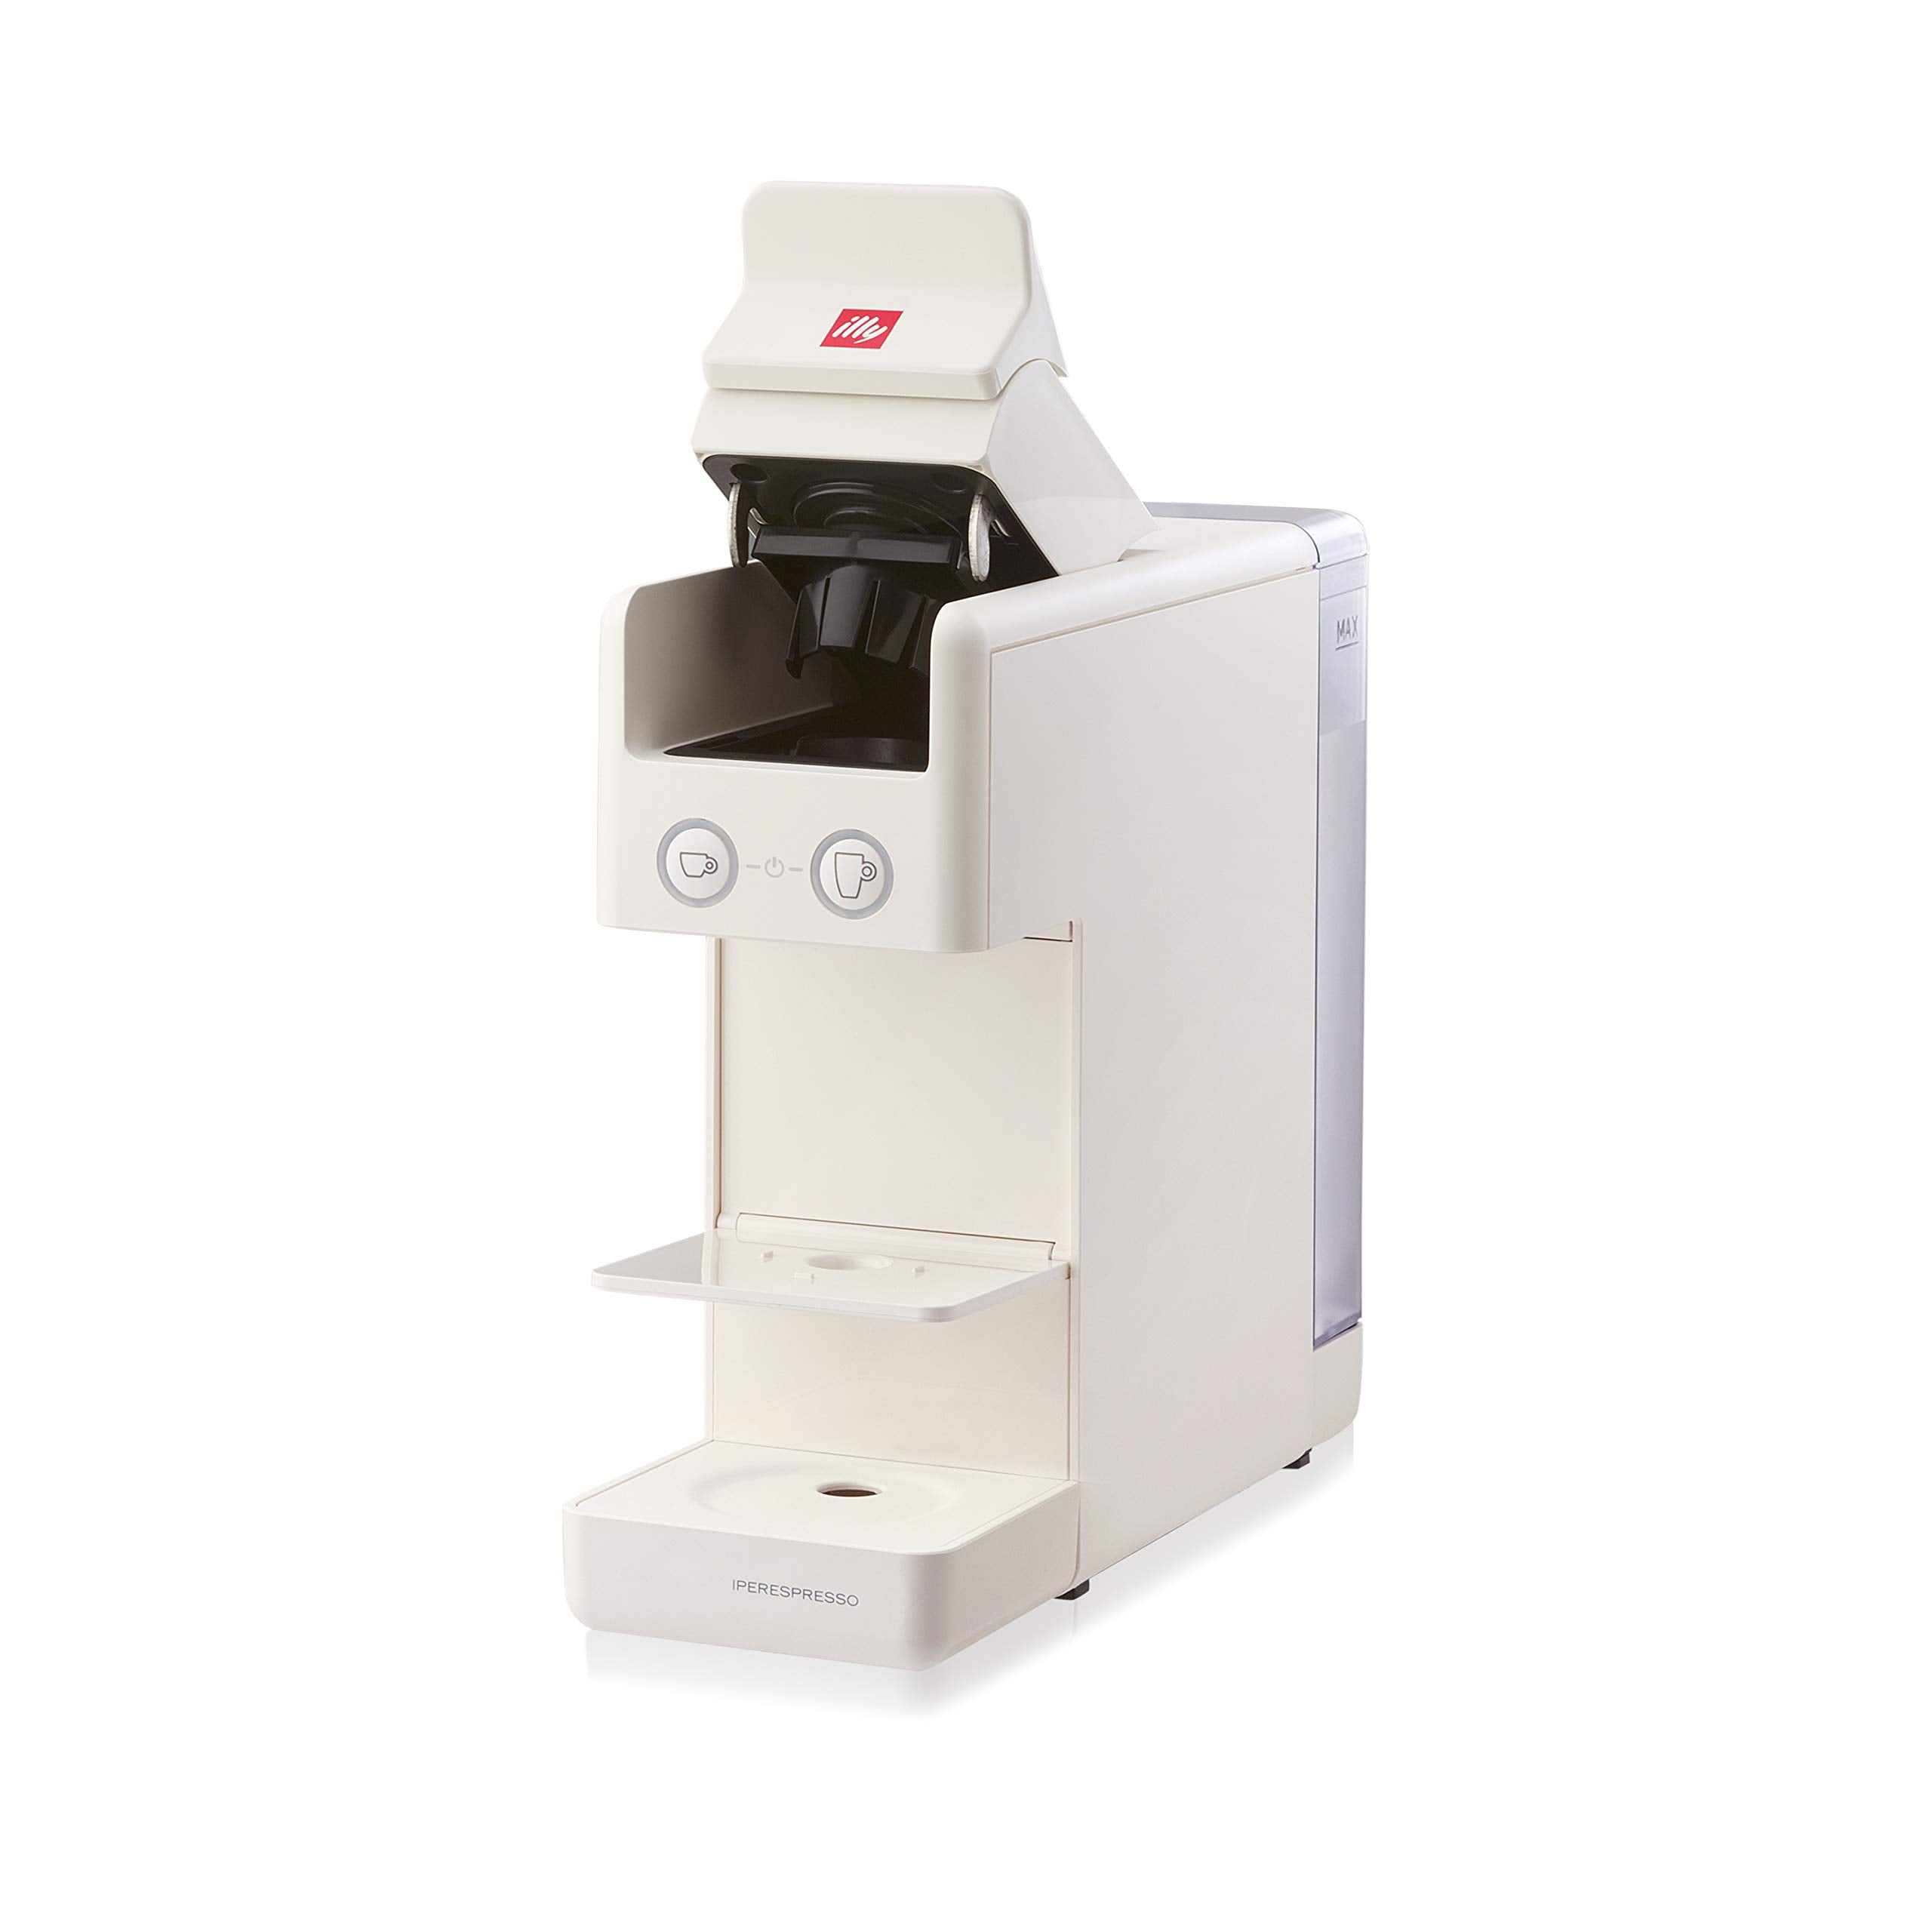 Illy NEW 2020 Y3.3 Espresso and Coffee Machine, 12.20x3.9x10.40, White